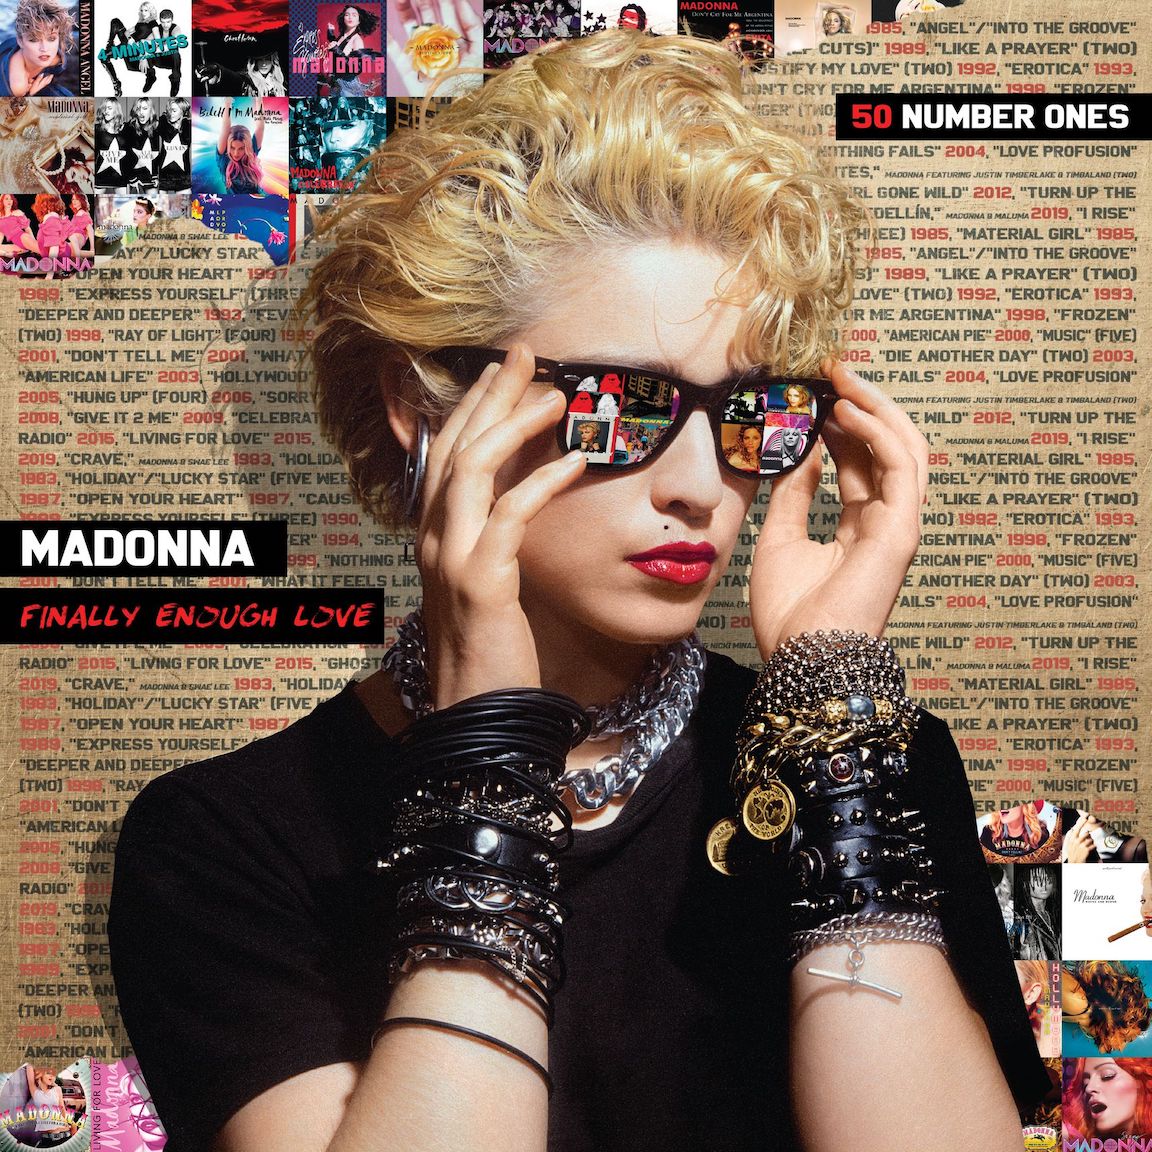 Madonna album artwork courtesy of High Rise PR